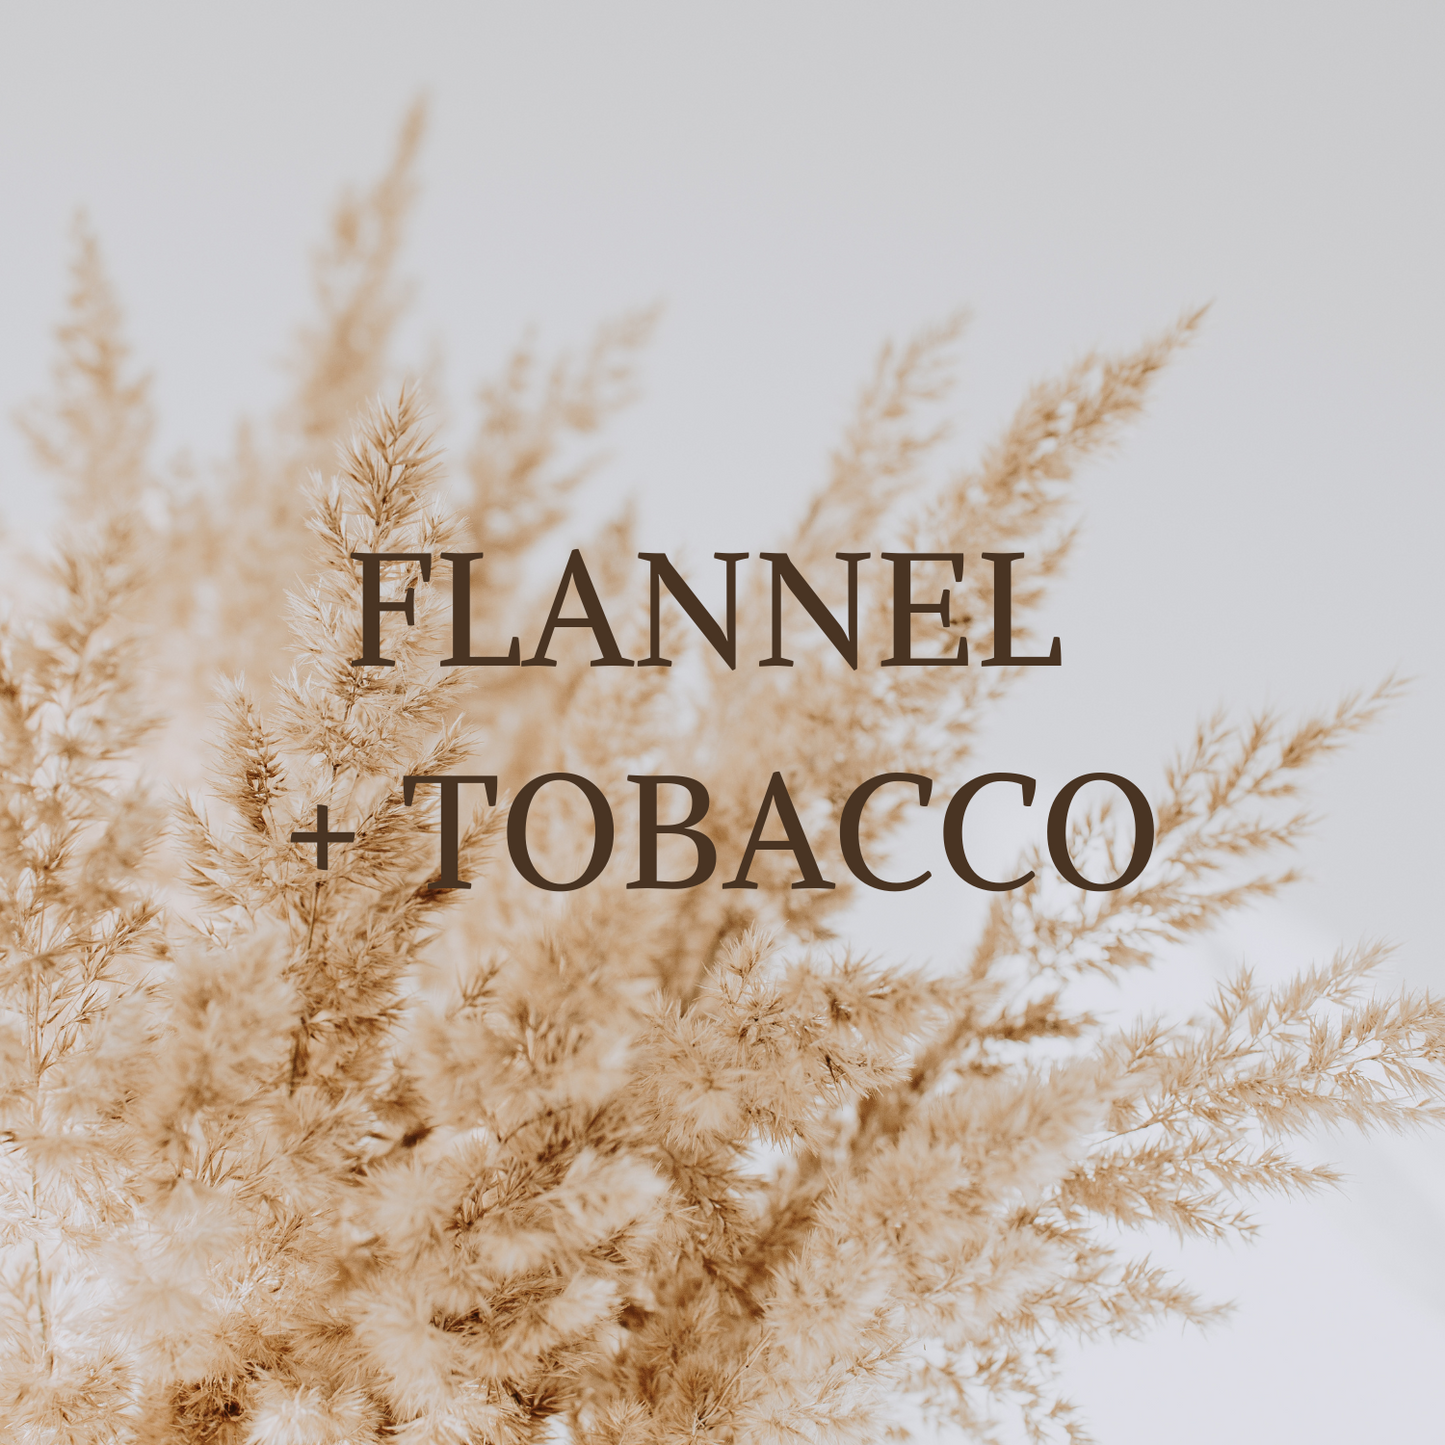 Flannel + Tobacco